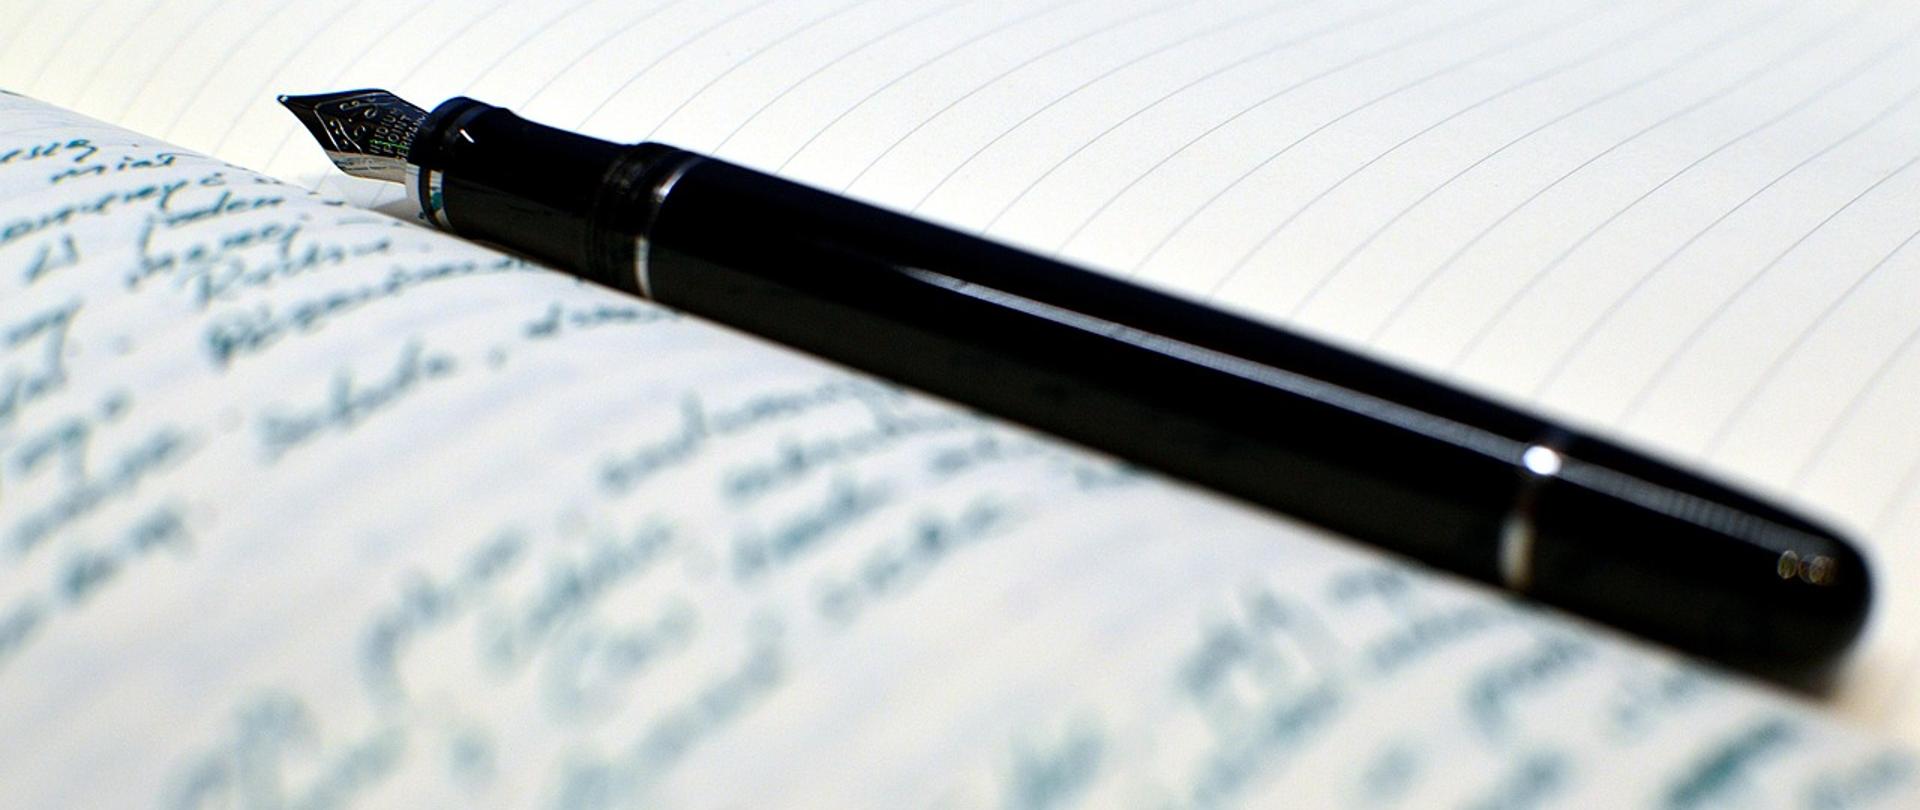 Zdjęcie przedstawia pióro do pisania położone na zapisanej kartce papieru